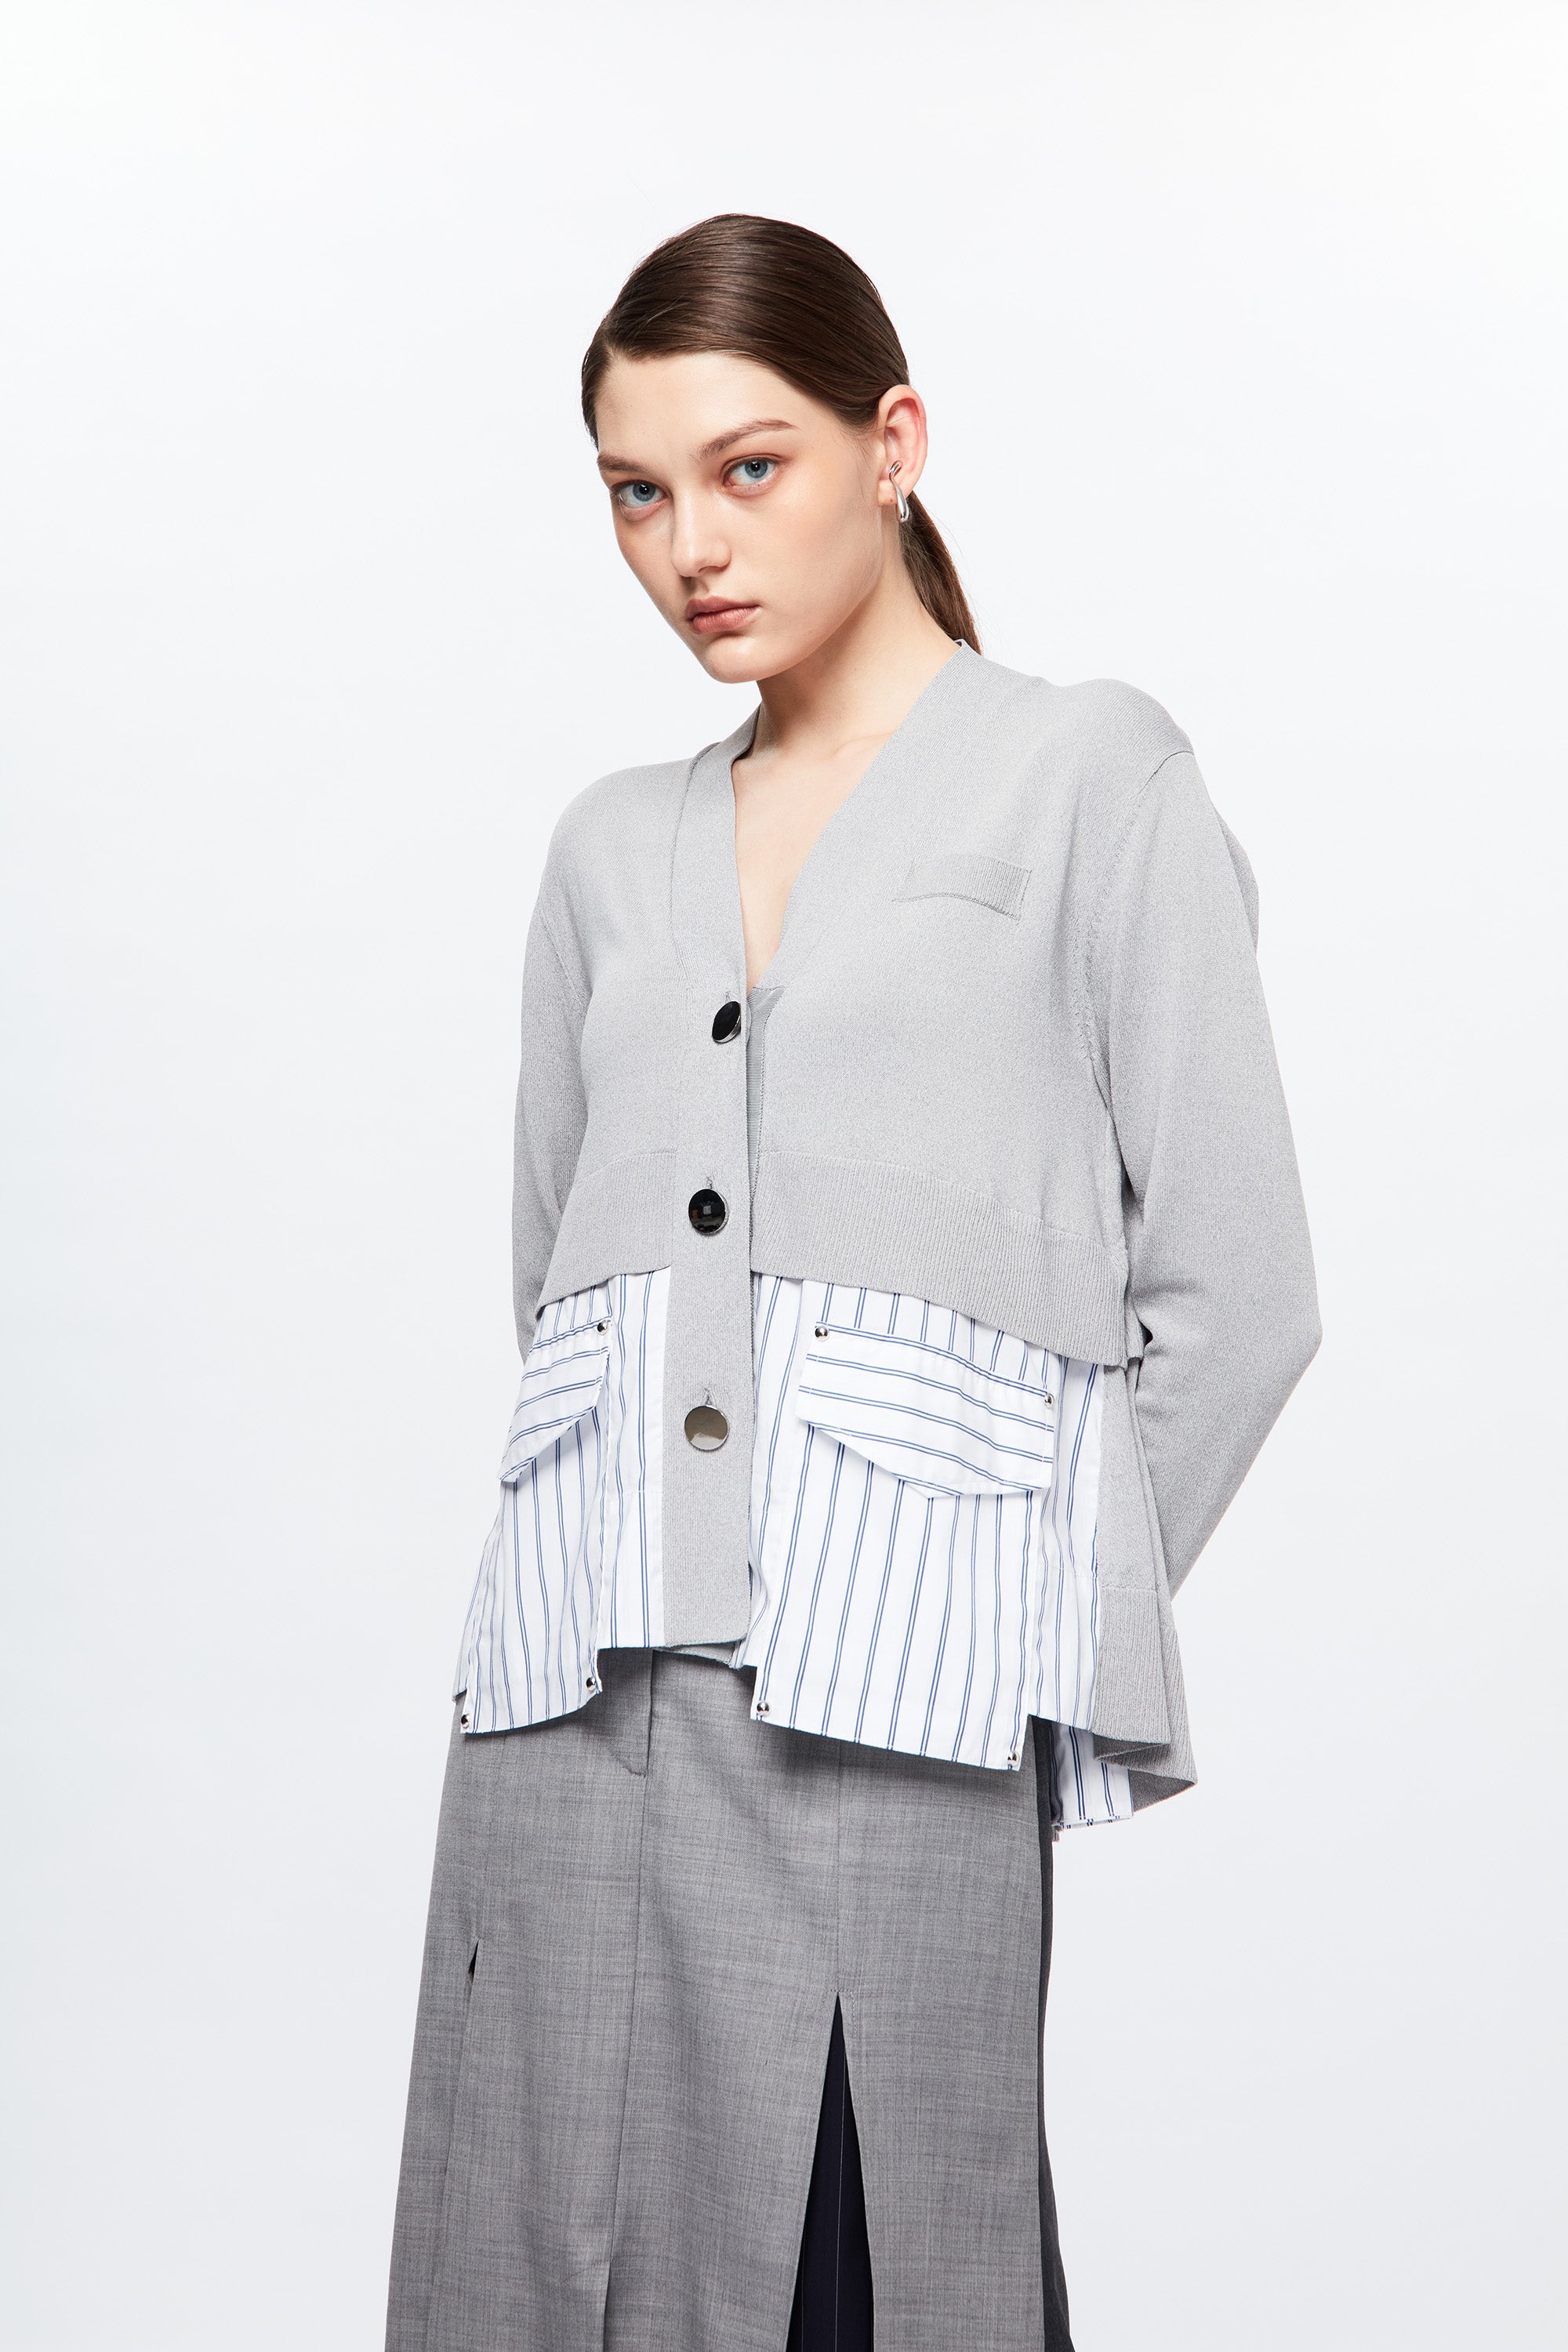 CNS Shirting Cardigan (Grey)